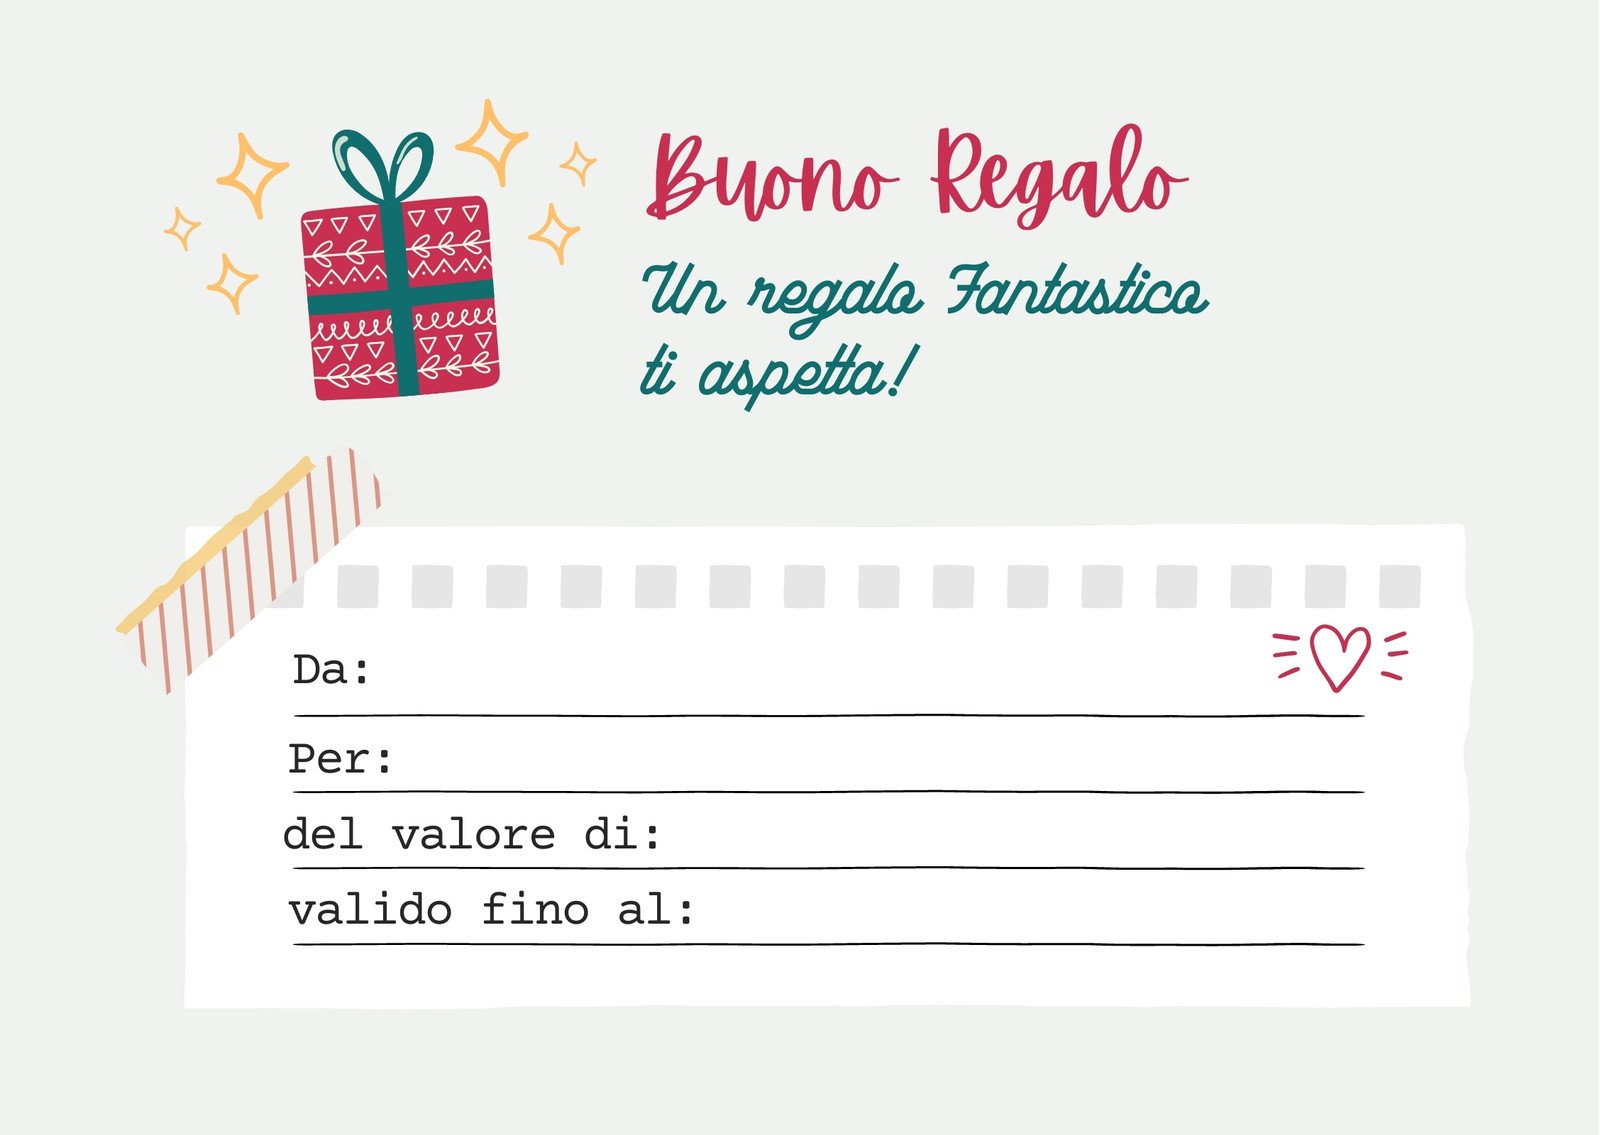   Buono Regalo  - Stampa - Logo glitterato: Gift  Cards